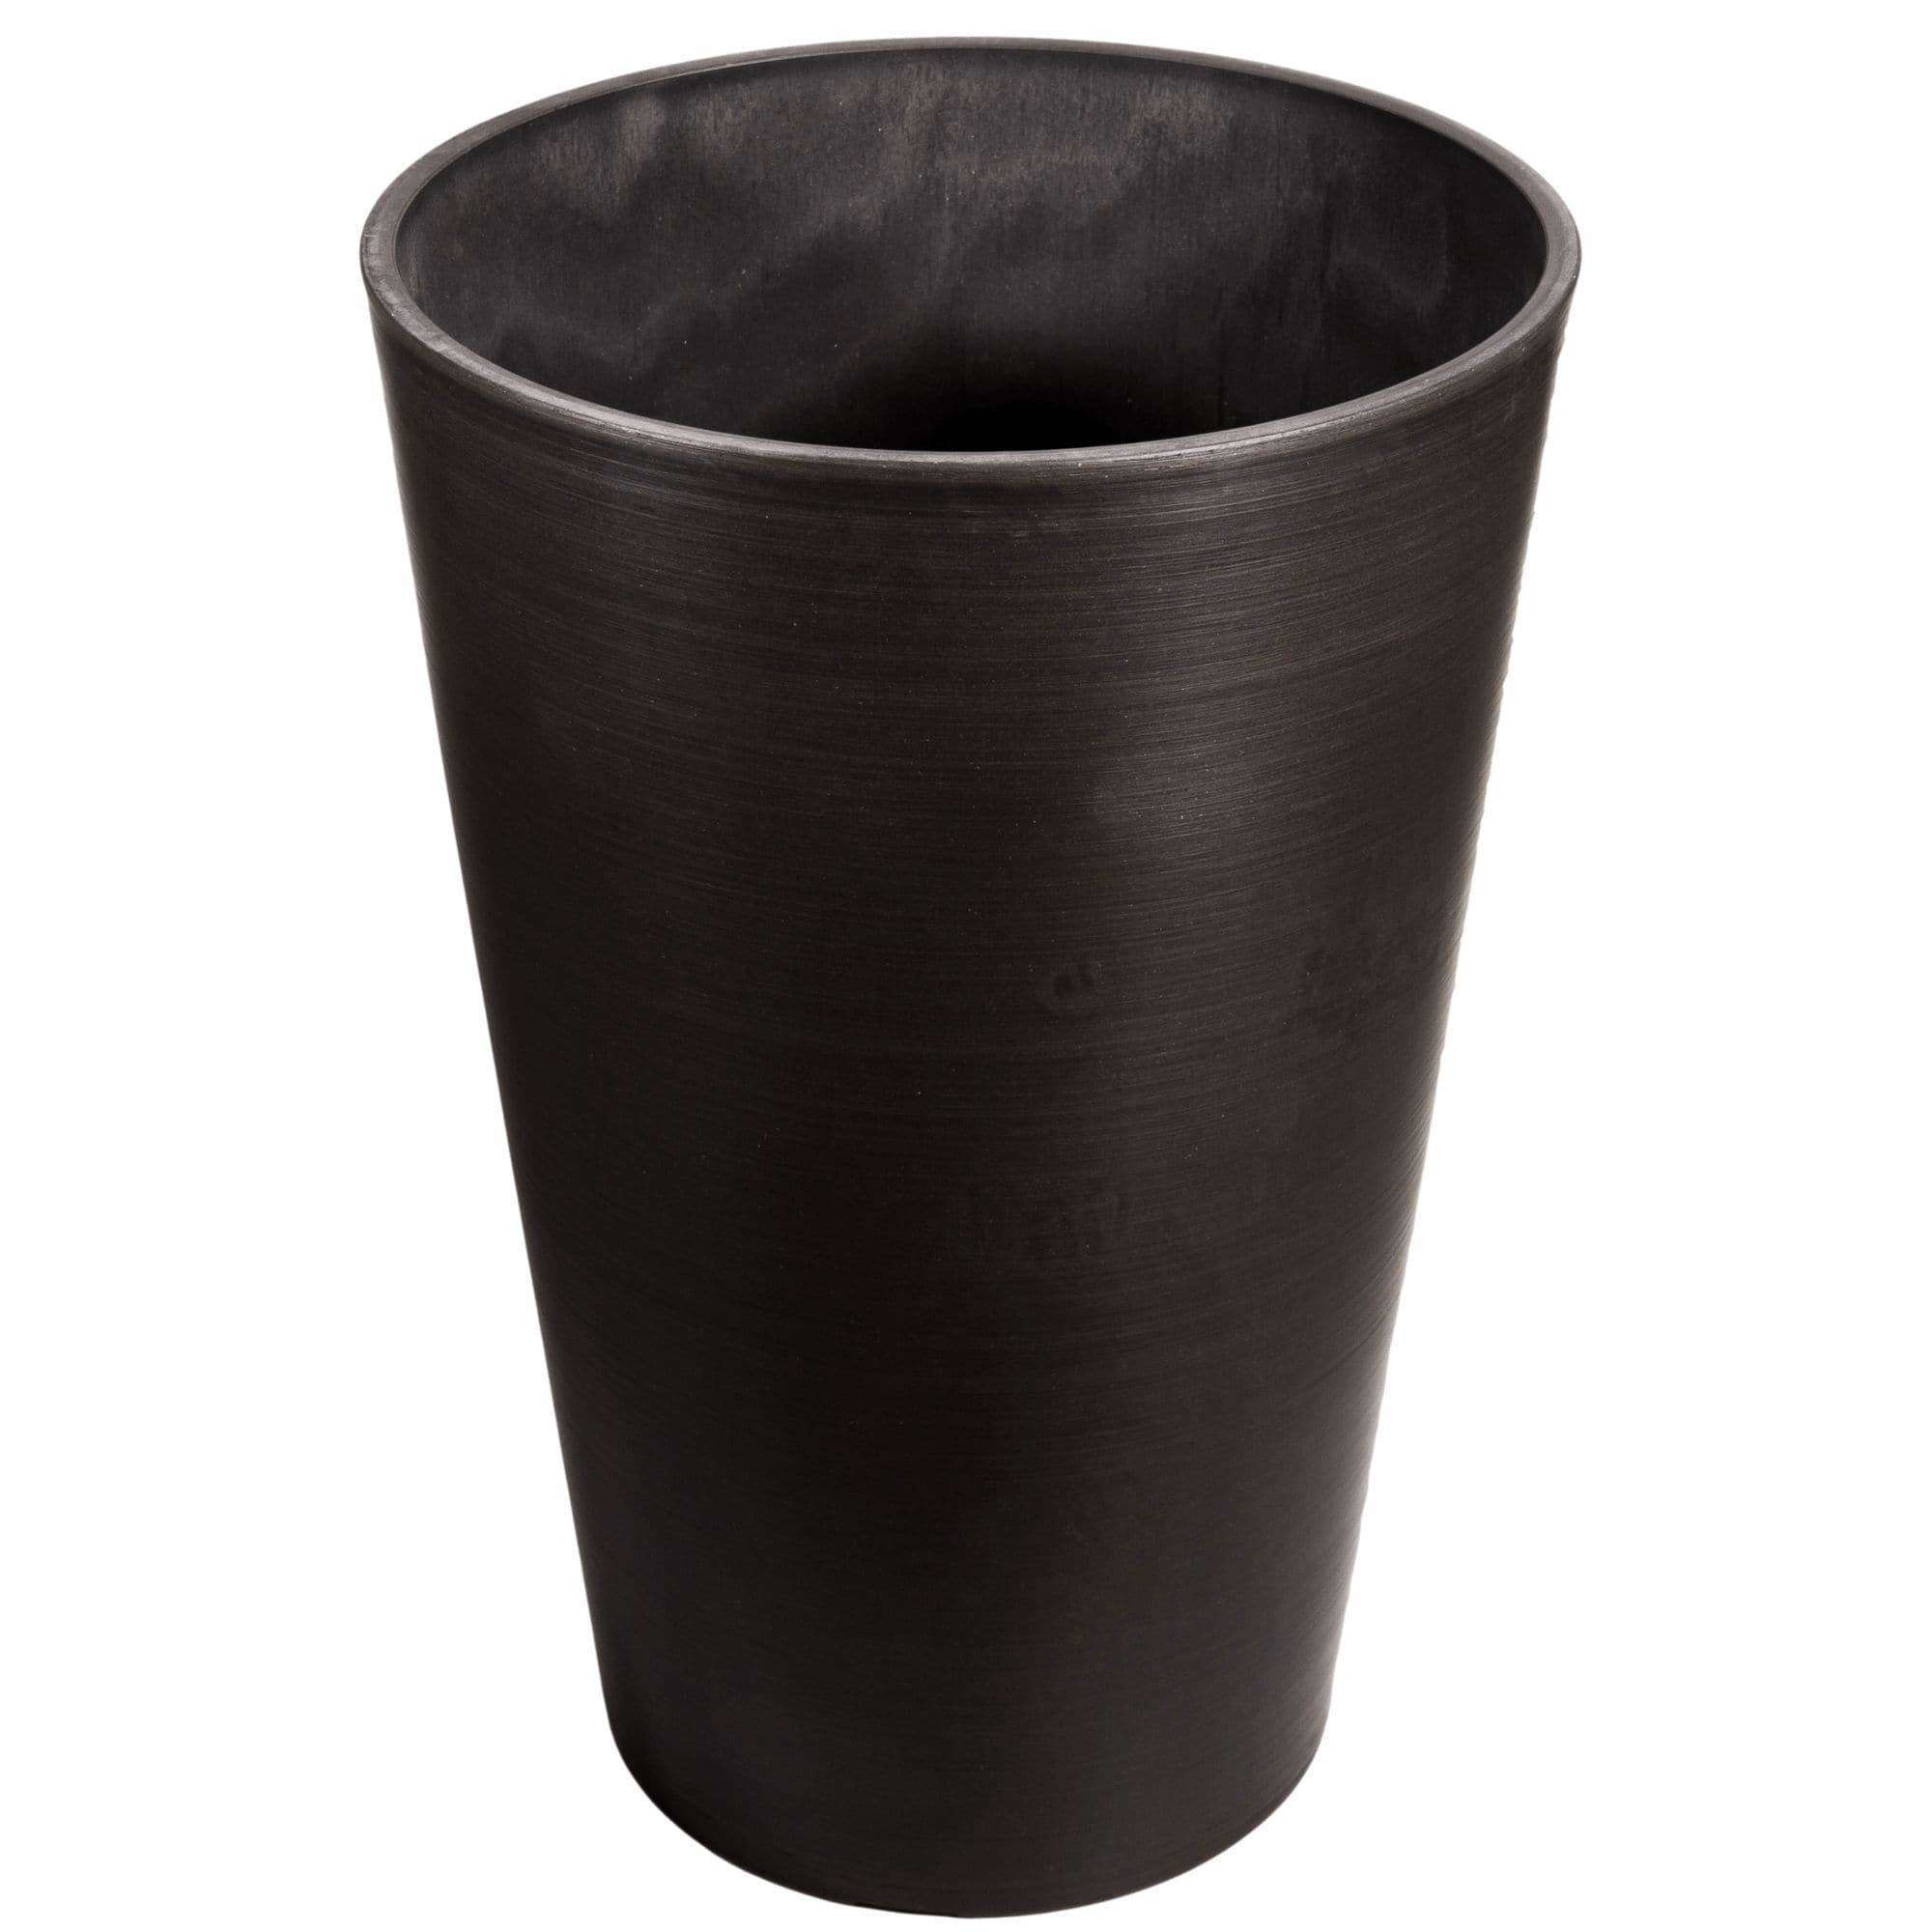 dark-grey-round-planter-47cm-376537.jpg